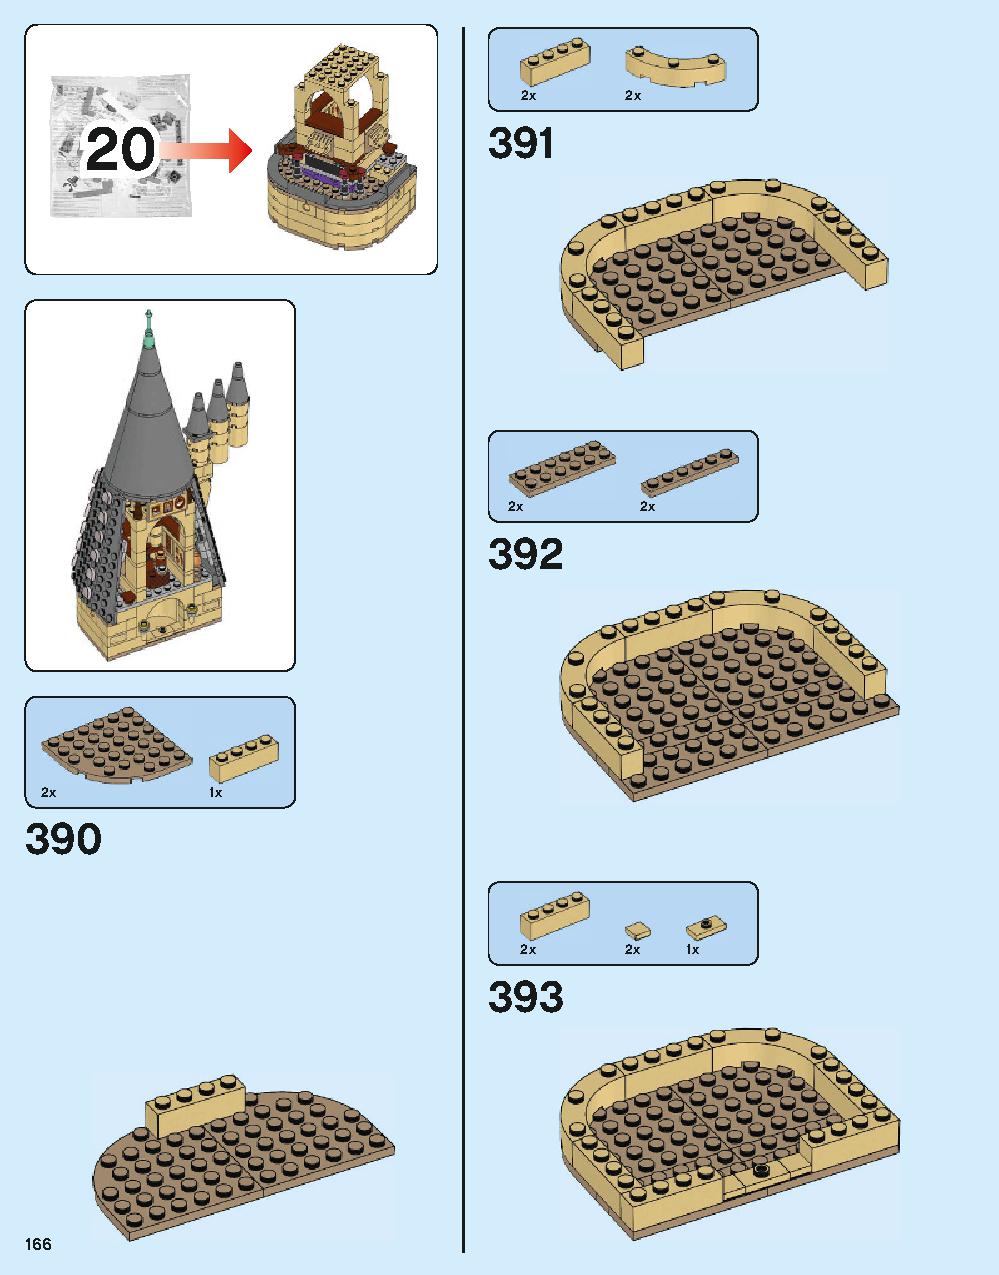 ホグワーツ城 71043 レゴの商品情報 レゴの説明書・組立方法 166 page